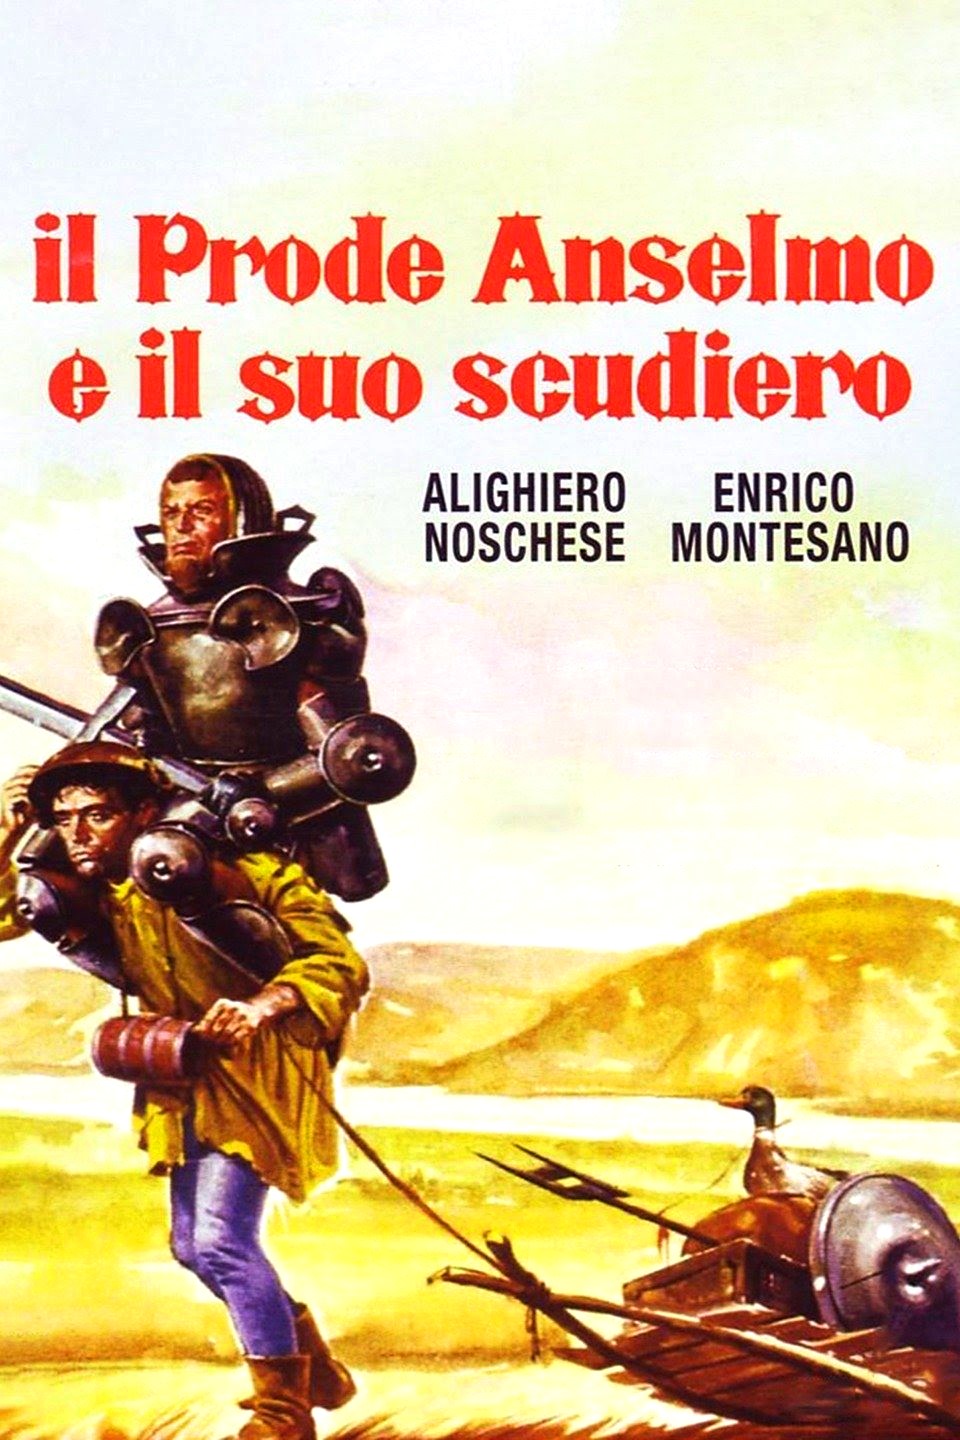 Il prode Anselmo e il suo scudiero (1973)